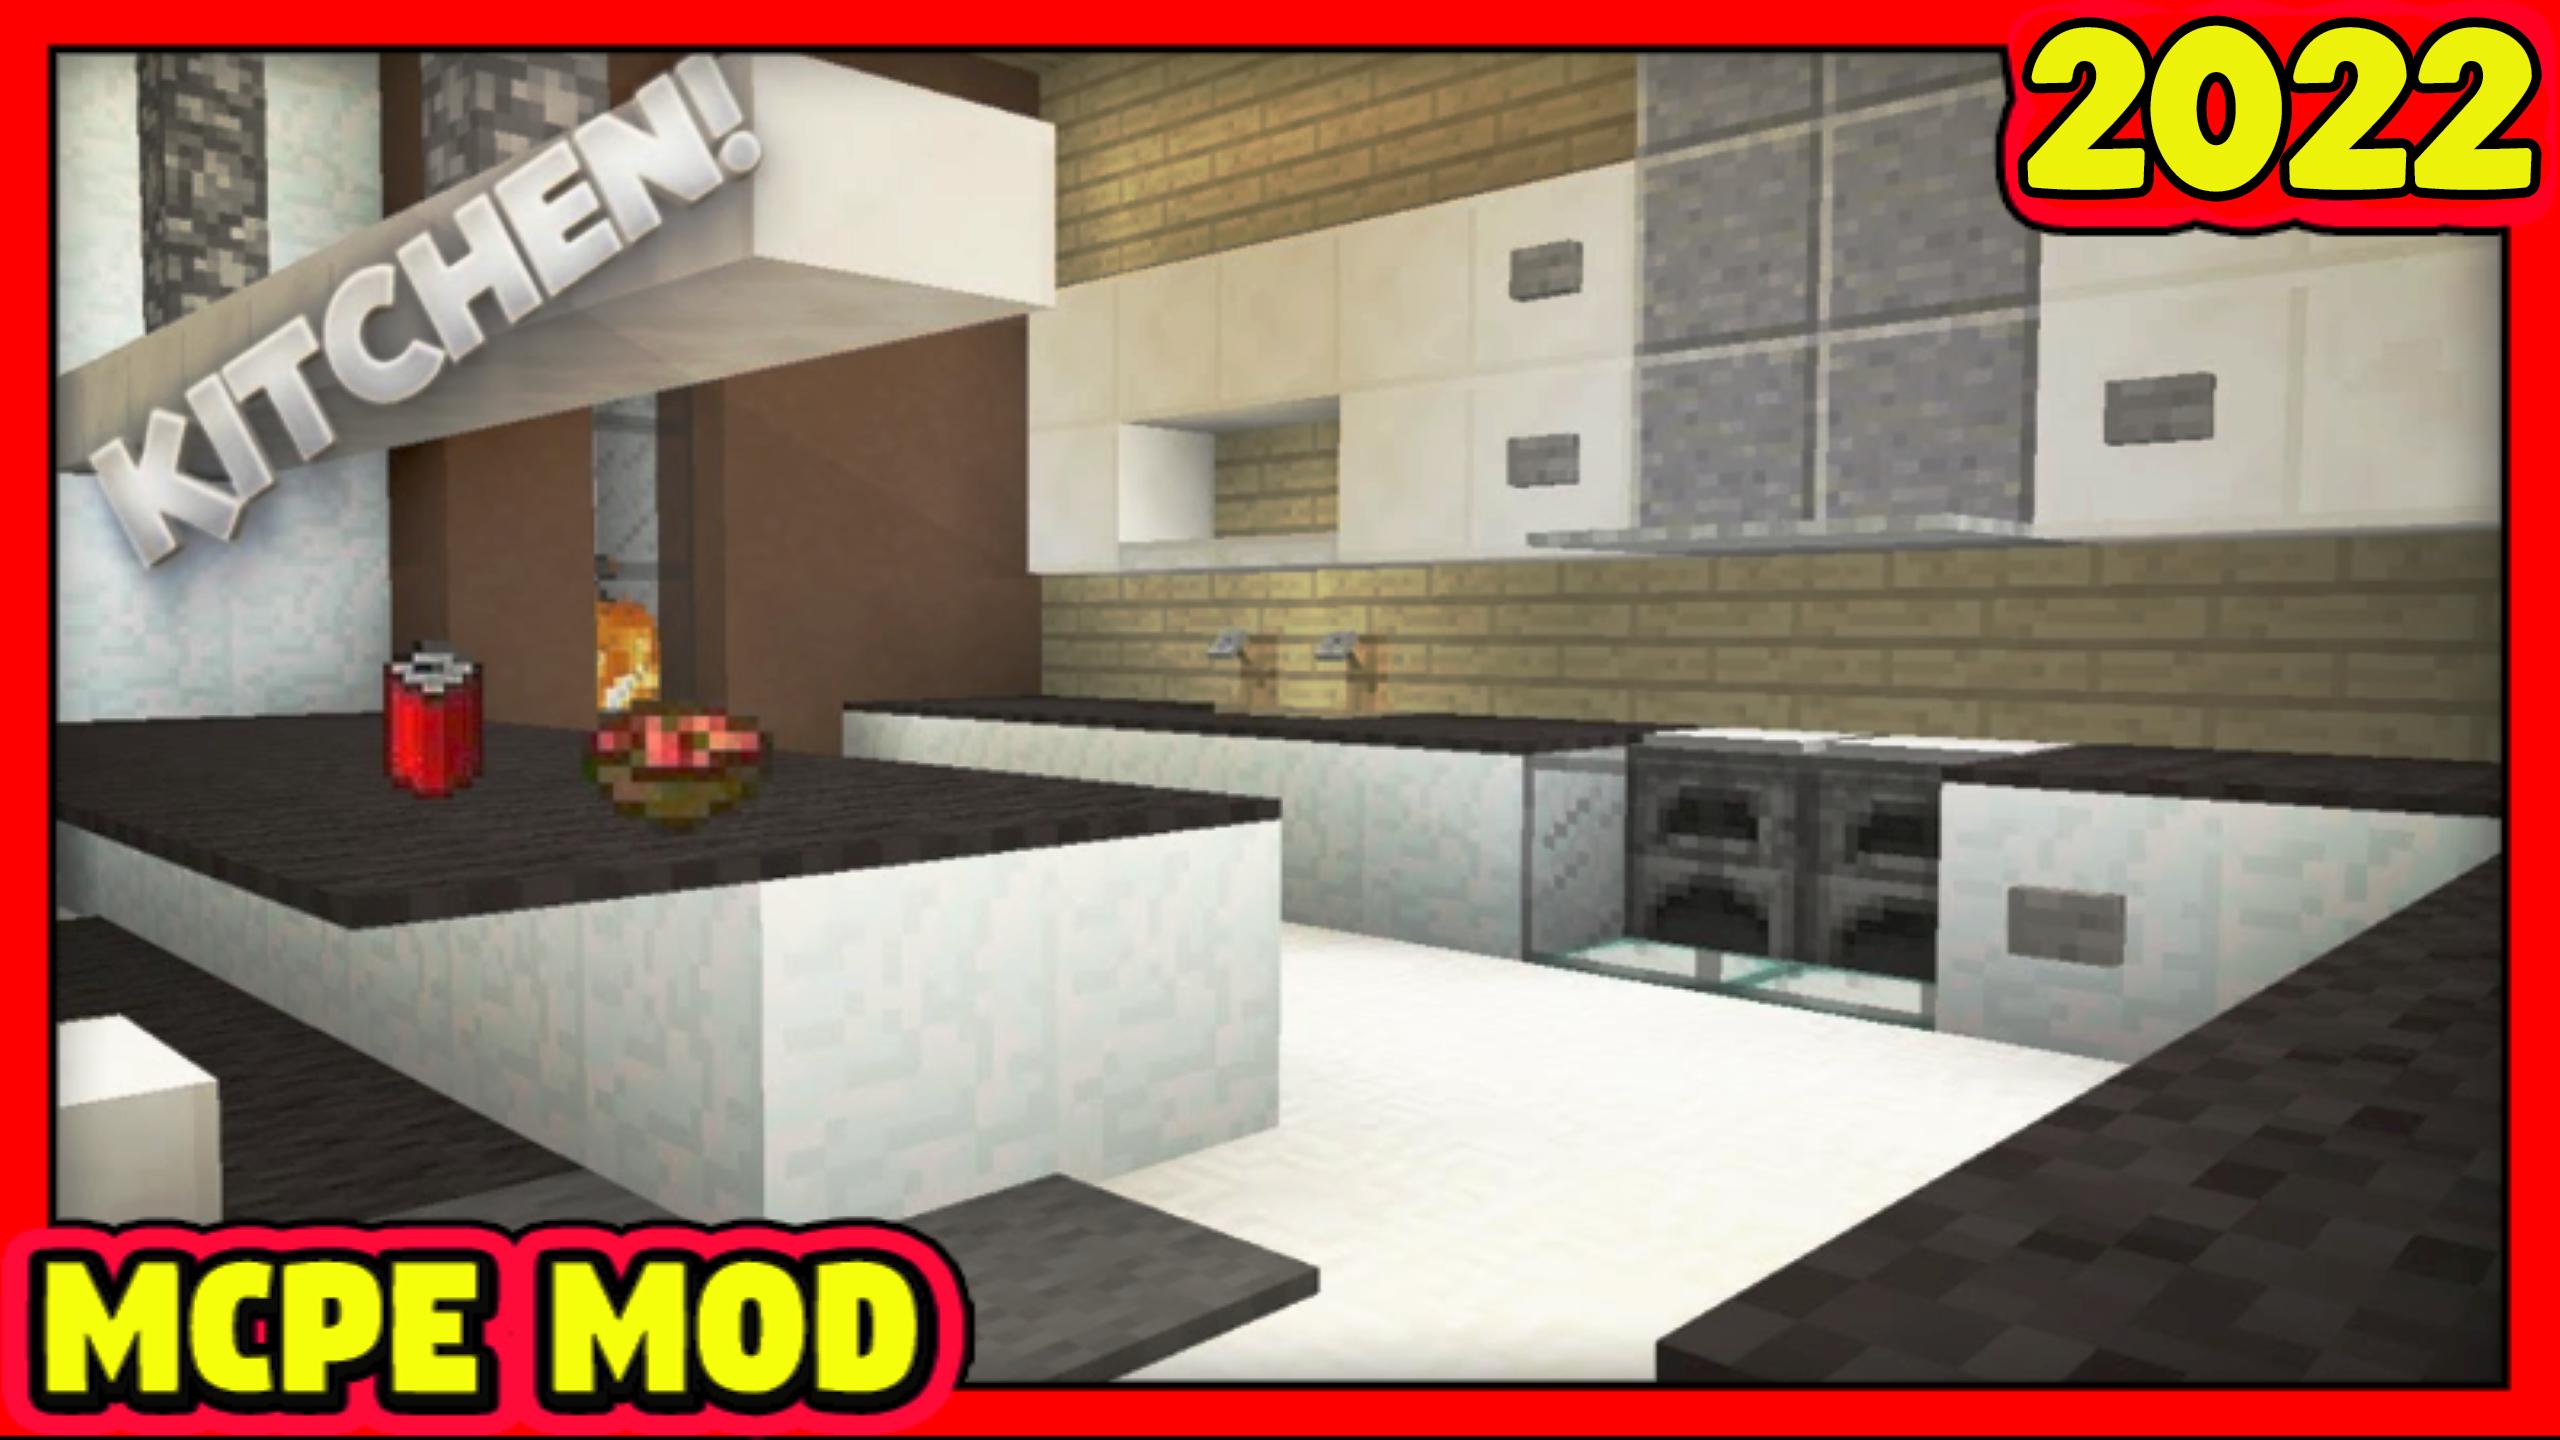 Скачать Kitchen Mod for Minecraft PE APK для Android